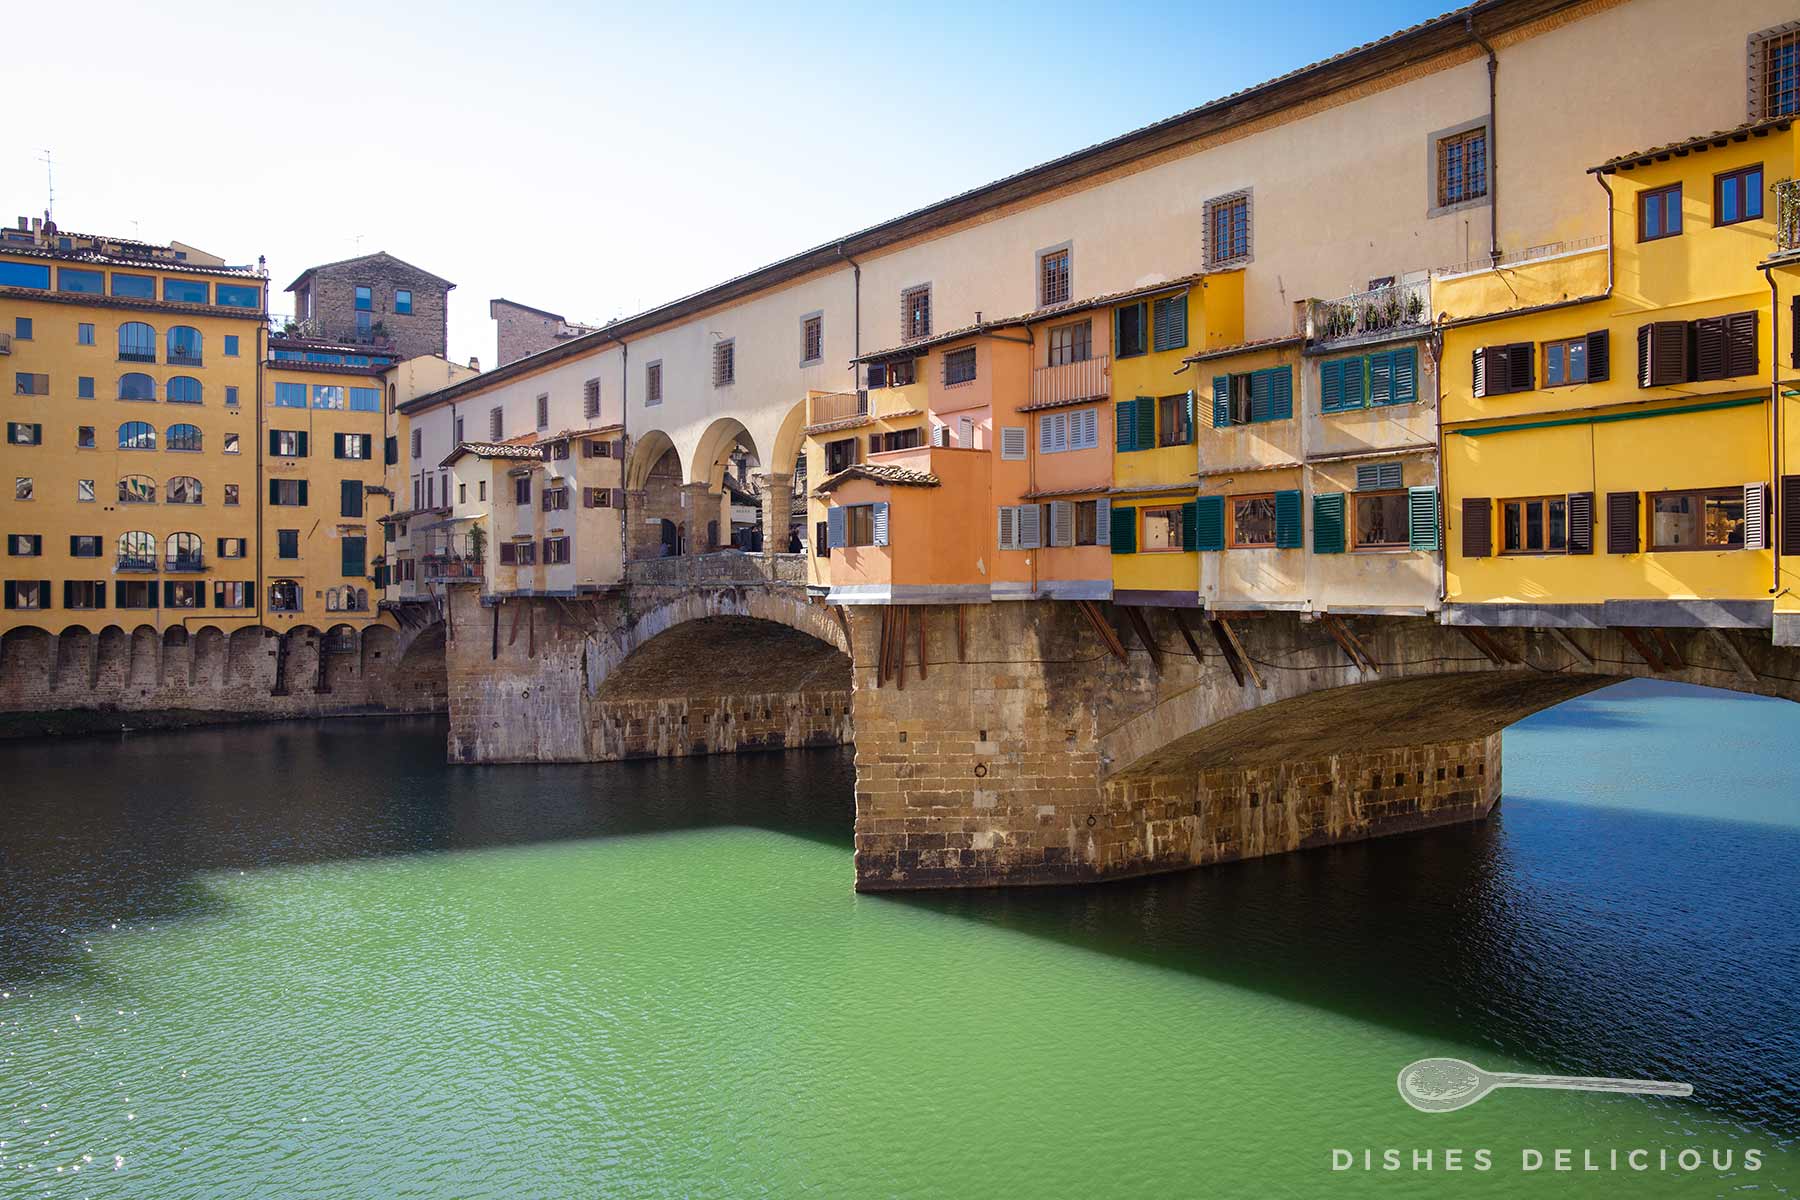 Die Ponte Vecchio mit ihren angebauten Häuschen am Fluß Arno - eine der zentralen Sehenswürdigkeiten von Florenz.